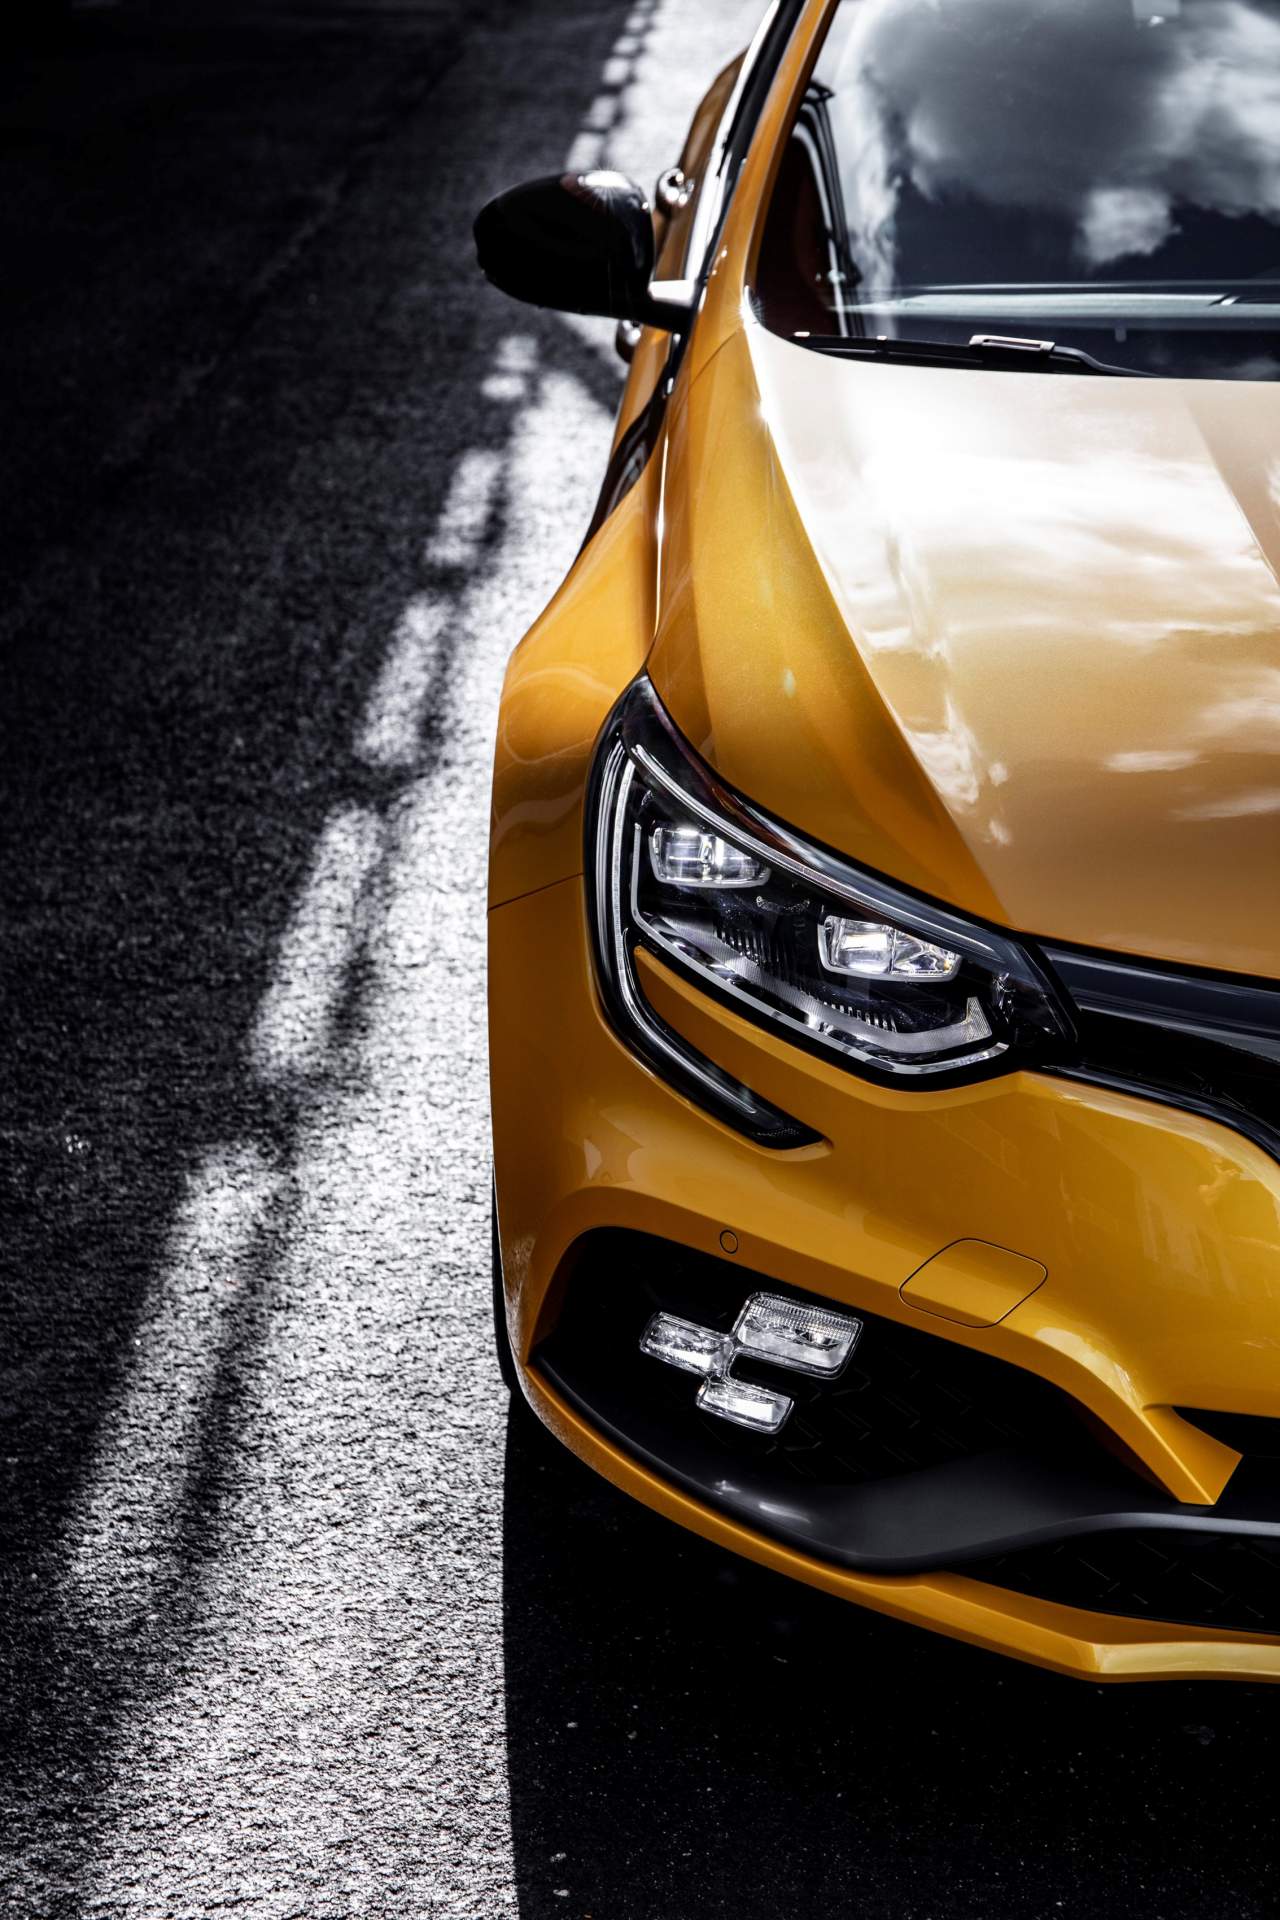 2019 Renault Megane R - Renault Megane Rs 2019 , HD Wallpaper & Backgrounds